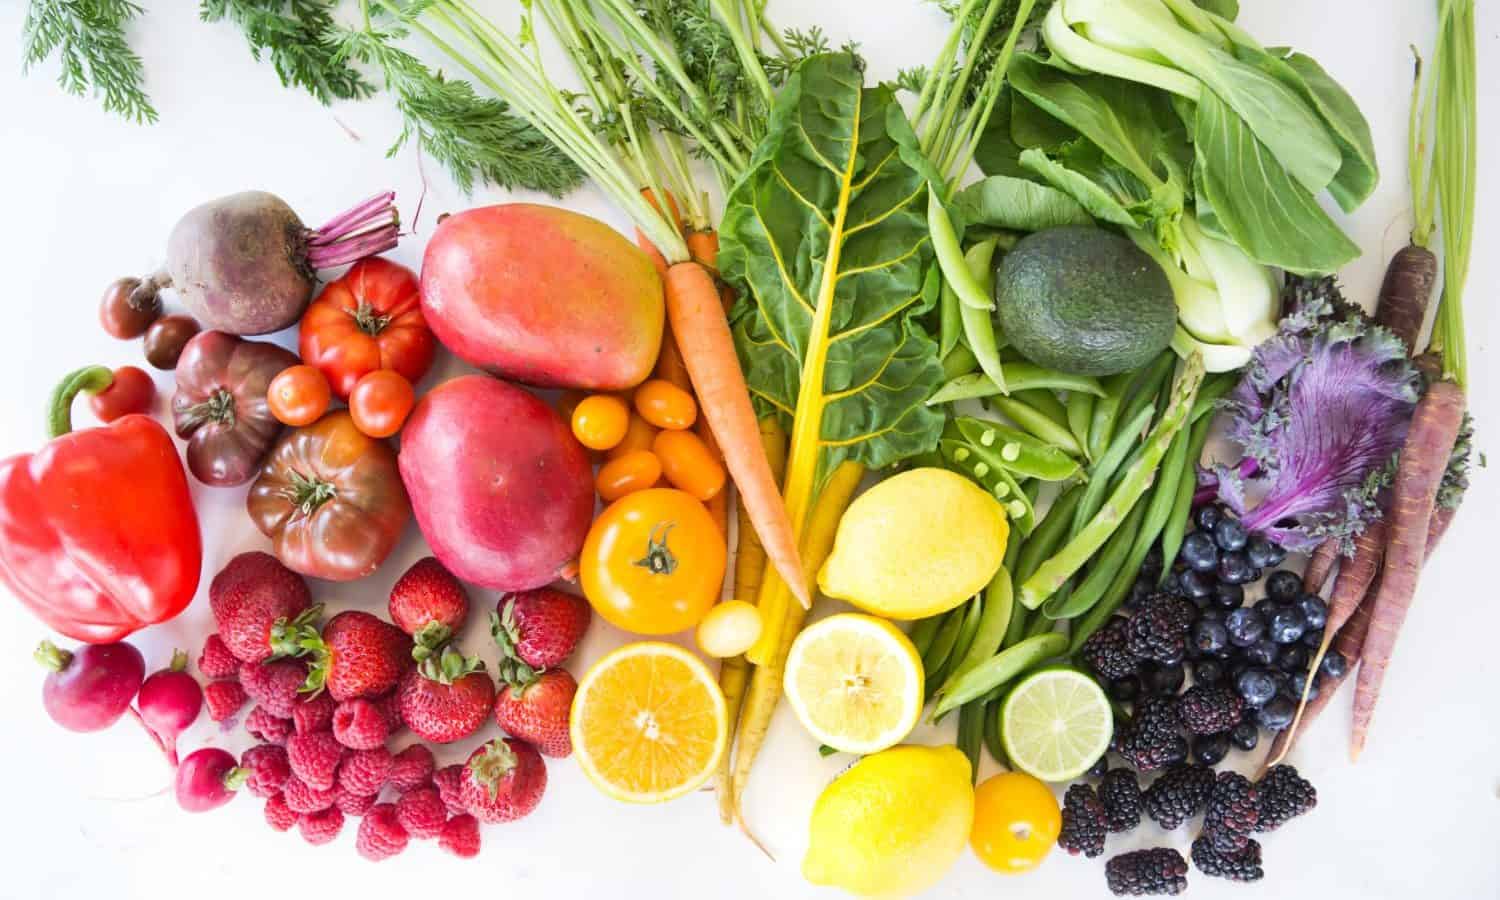 Apeel帮助新鲜食品种植者,世界各地的分销商和零售商提供水果和蔬菜有更好的营养和货架寿命的两倍。